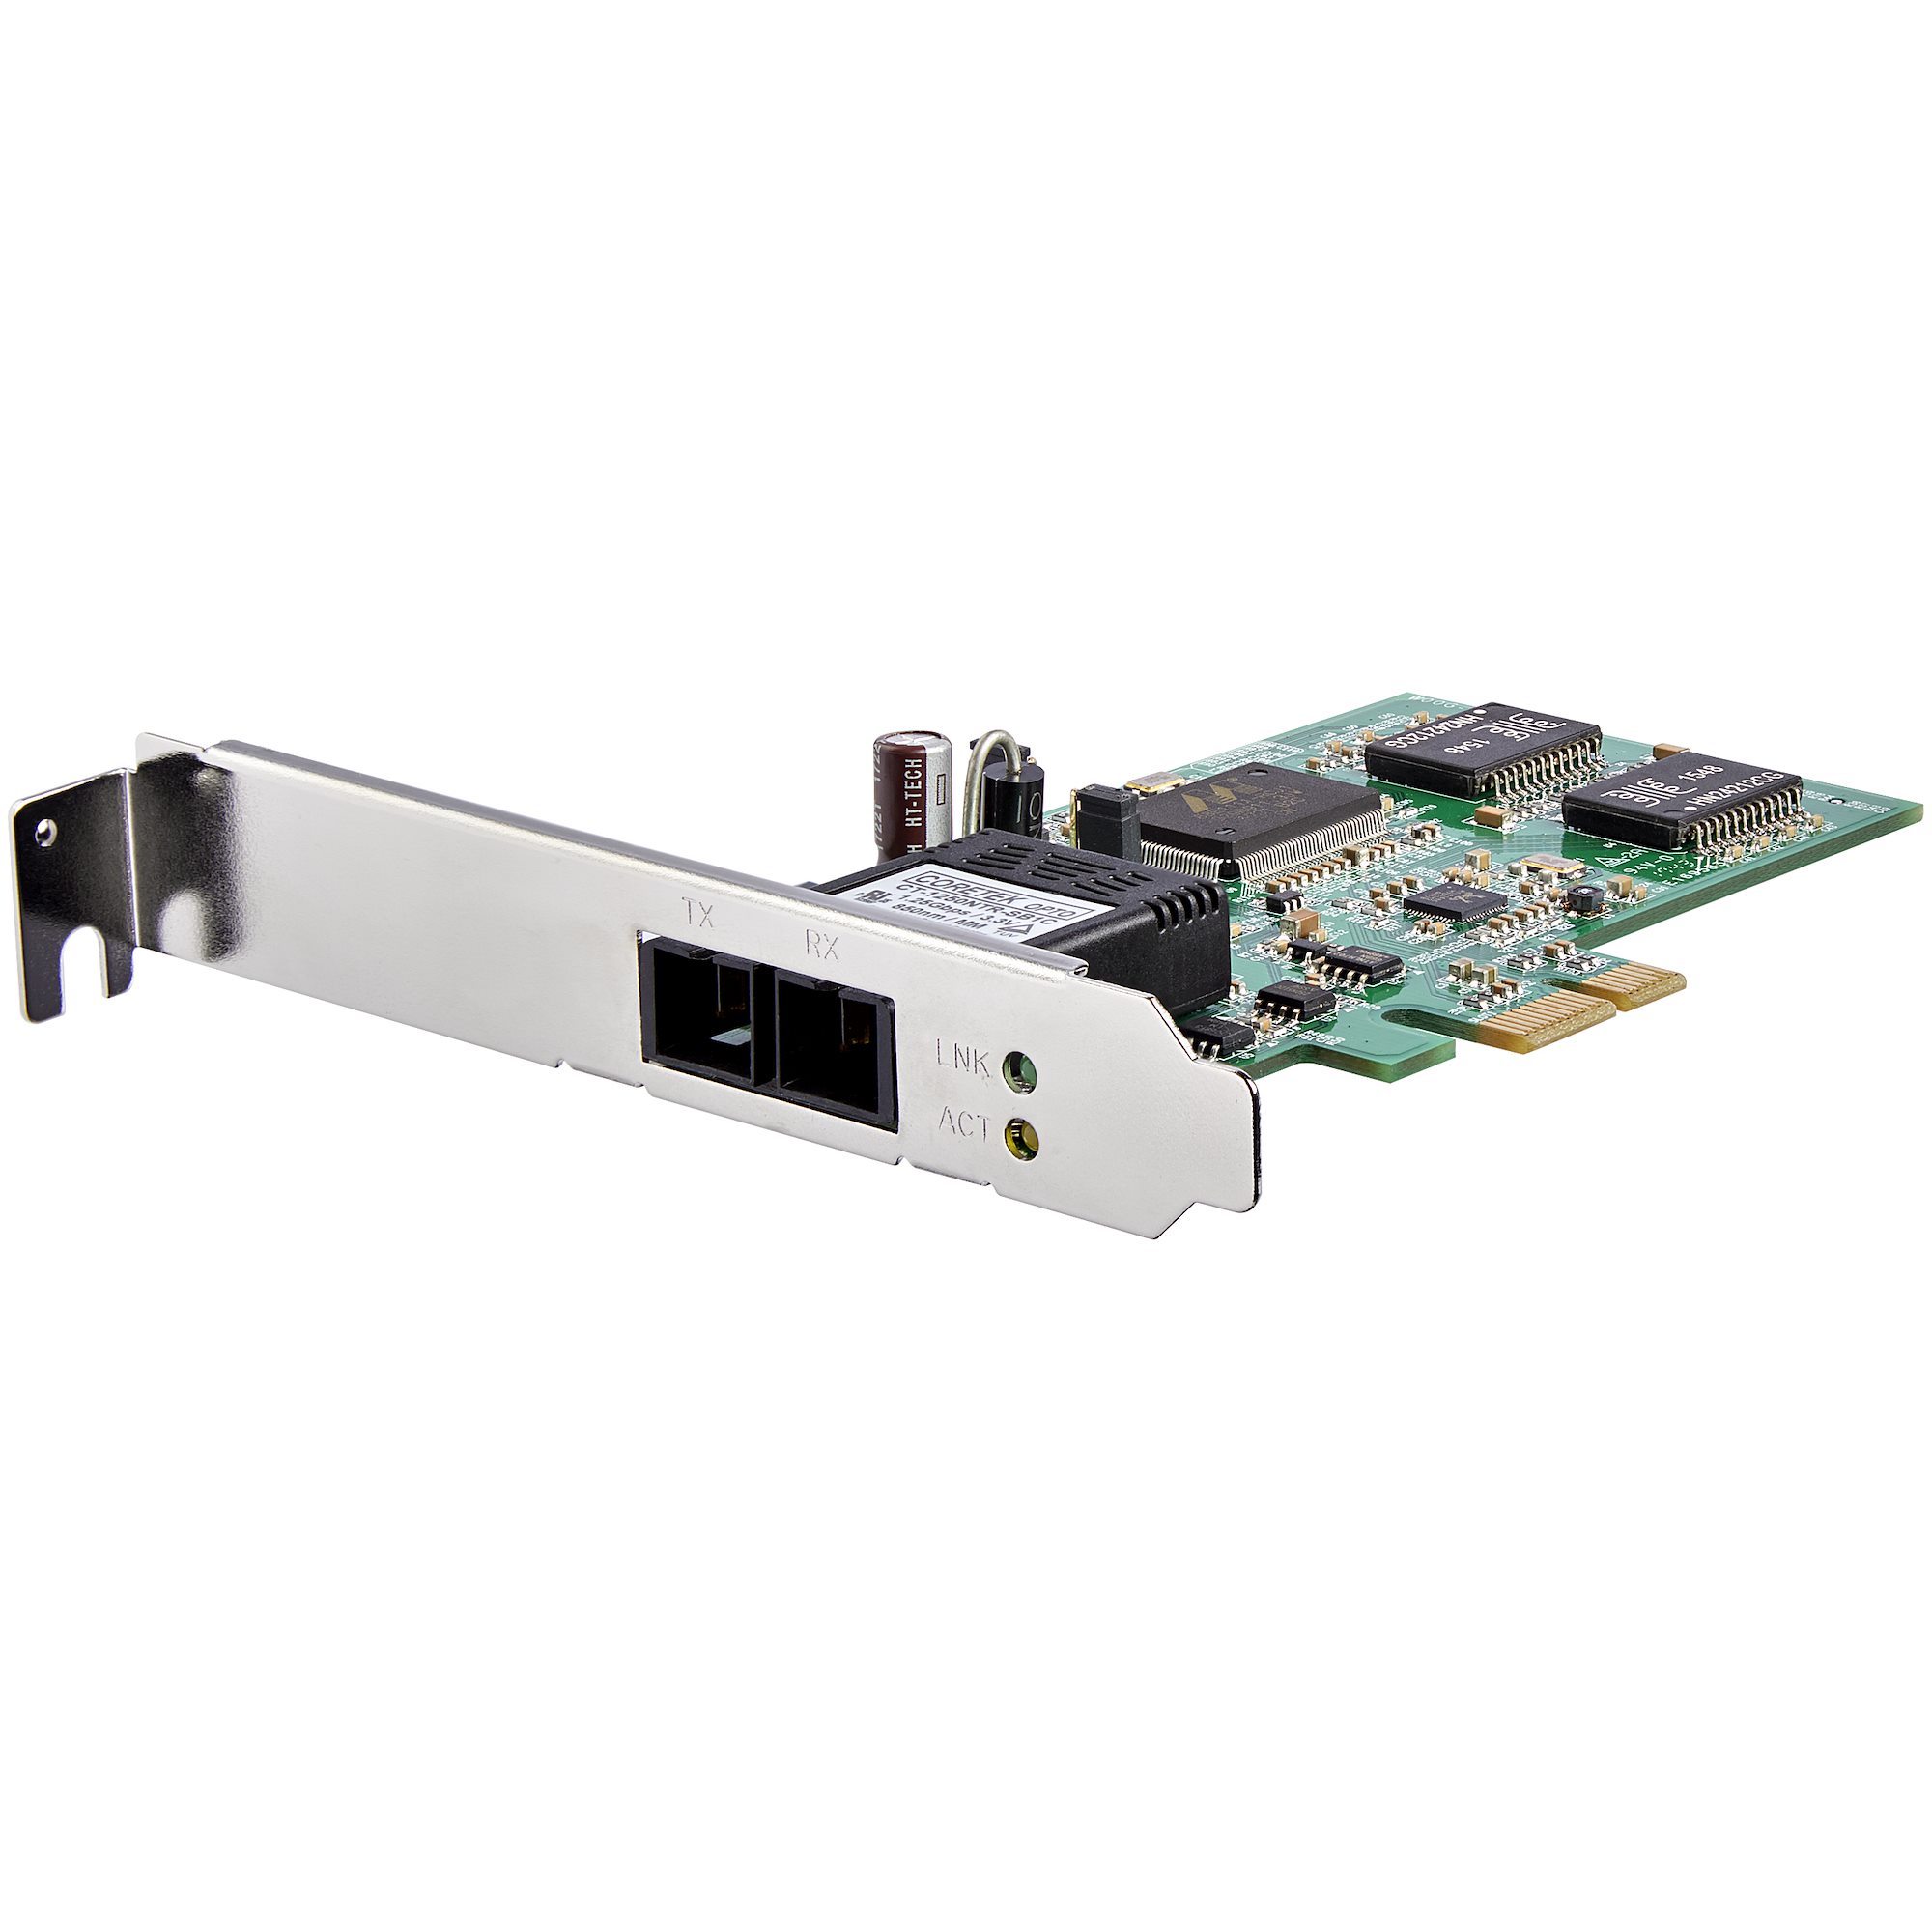 PCIe対応マルチモード2芯SC光ファイバー用GbEネットワークカードアダプタ ネットワークアダプタ カード 日本